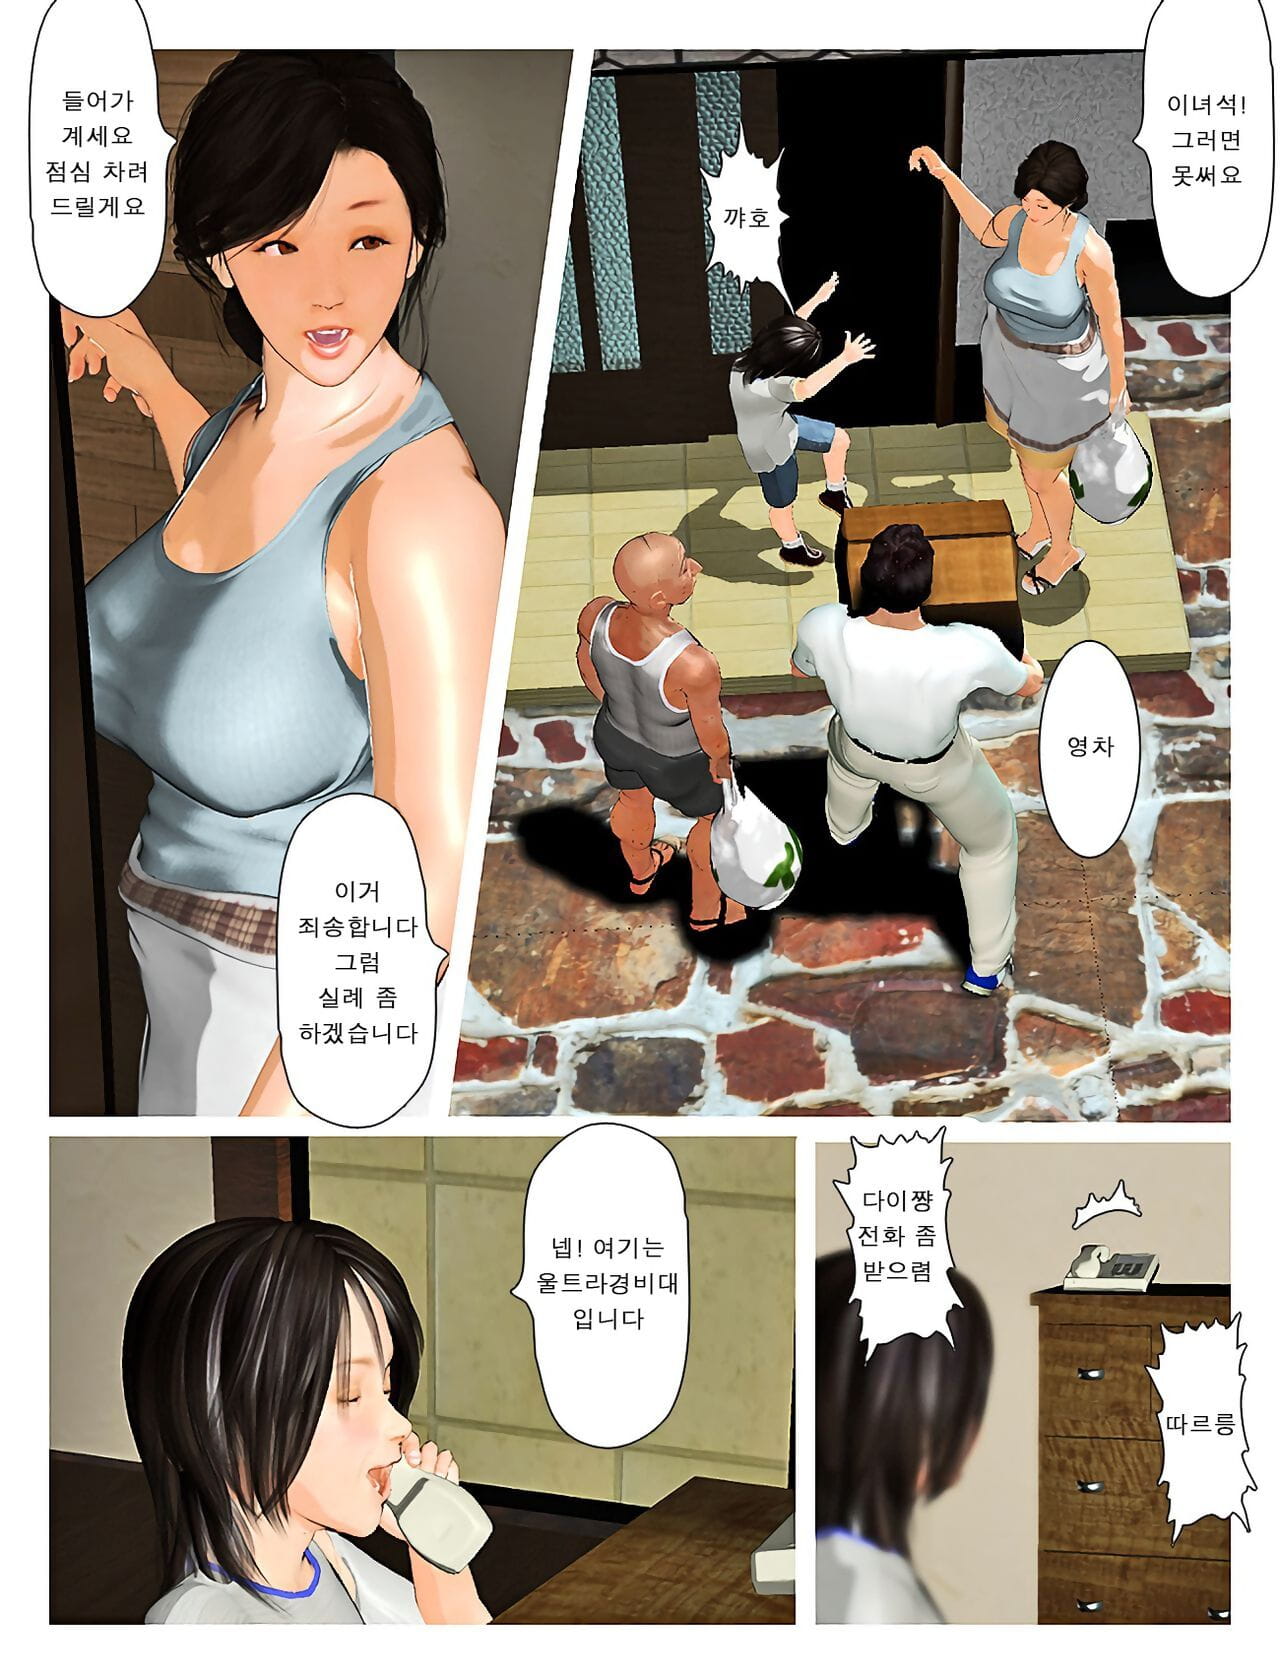 Kyou no misako san 2019:3 오늘의 미사코씨 2019:3 page 1